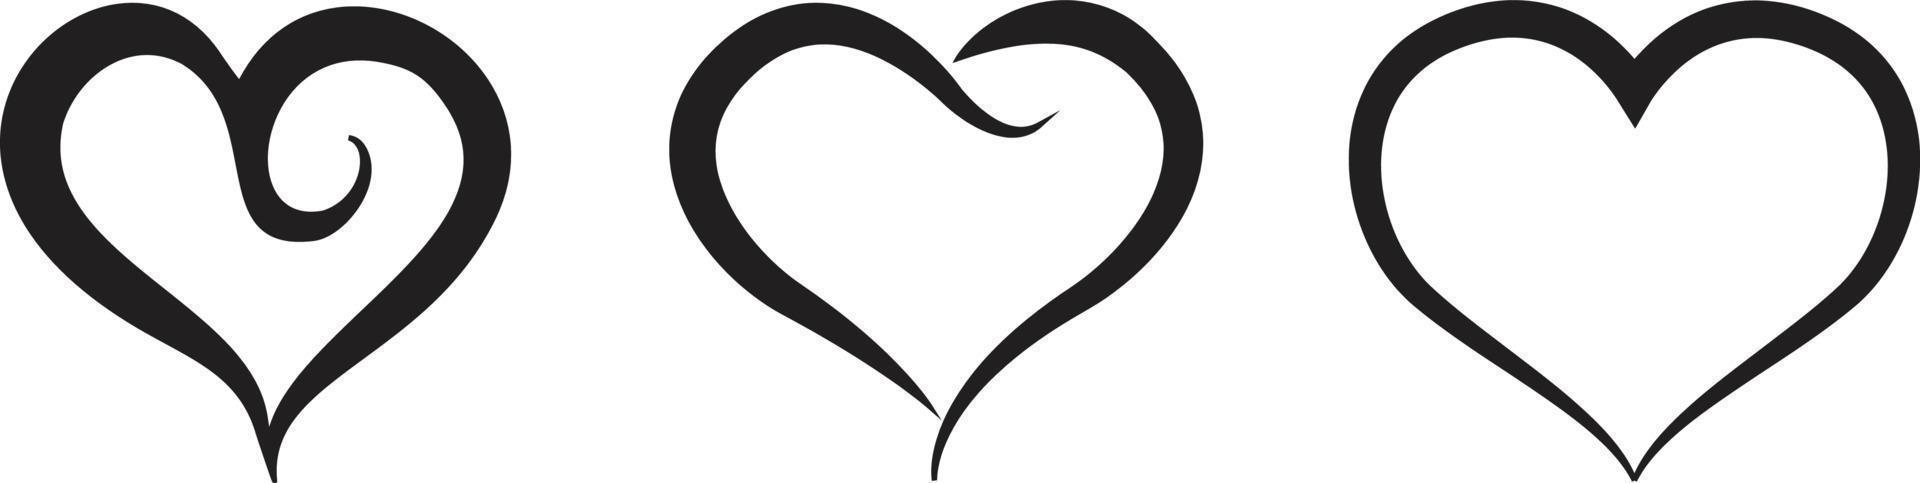 vetor de ícone de coração. símbolo de amor perfeito. sinal de dia dos namorados, emblema isolado no fundo branco, estilo simples para design gráfico e web,